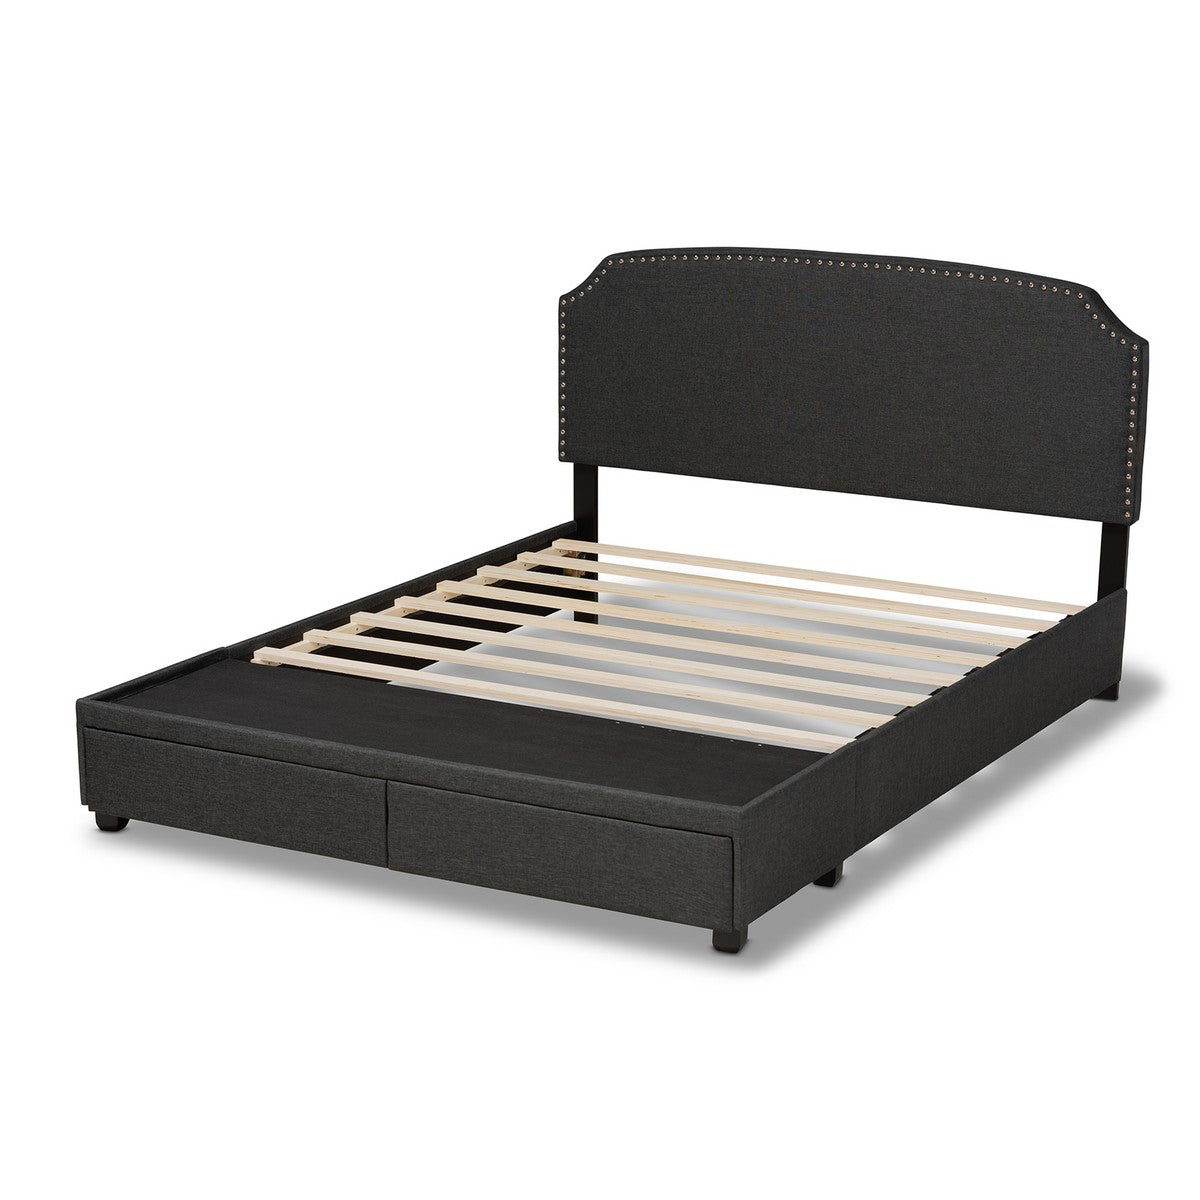 Baxton Studio Larese Dark Grey Fabric Upholstered 2-Drawer Queen Size Platform Storage Bed